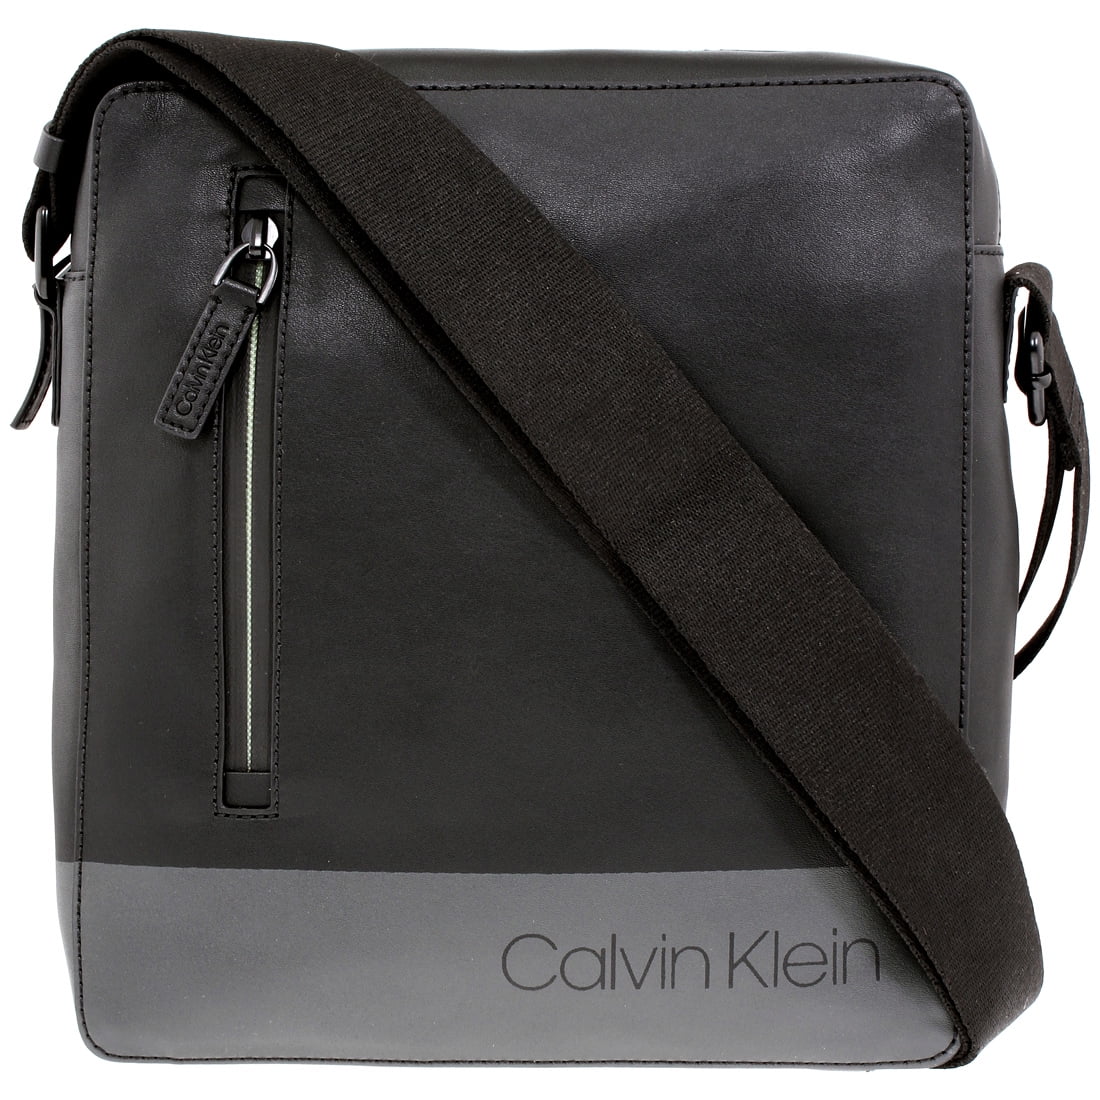 calvin klein purse warranty